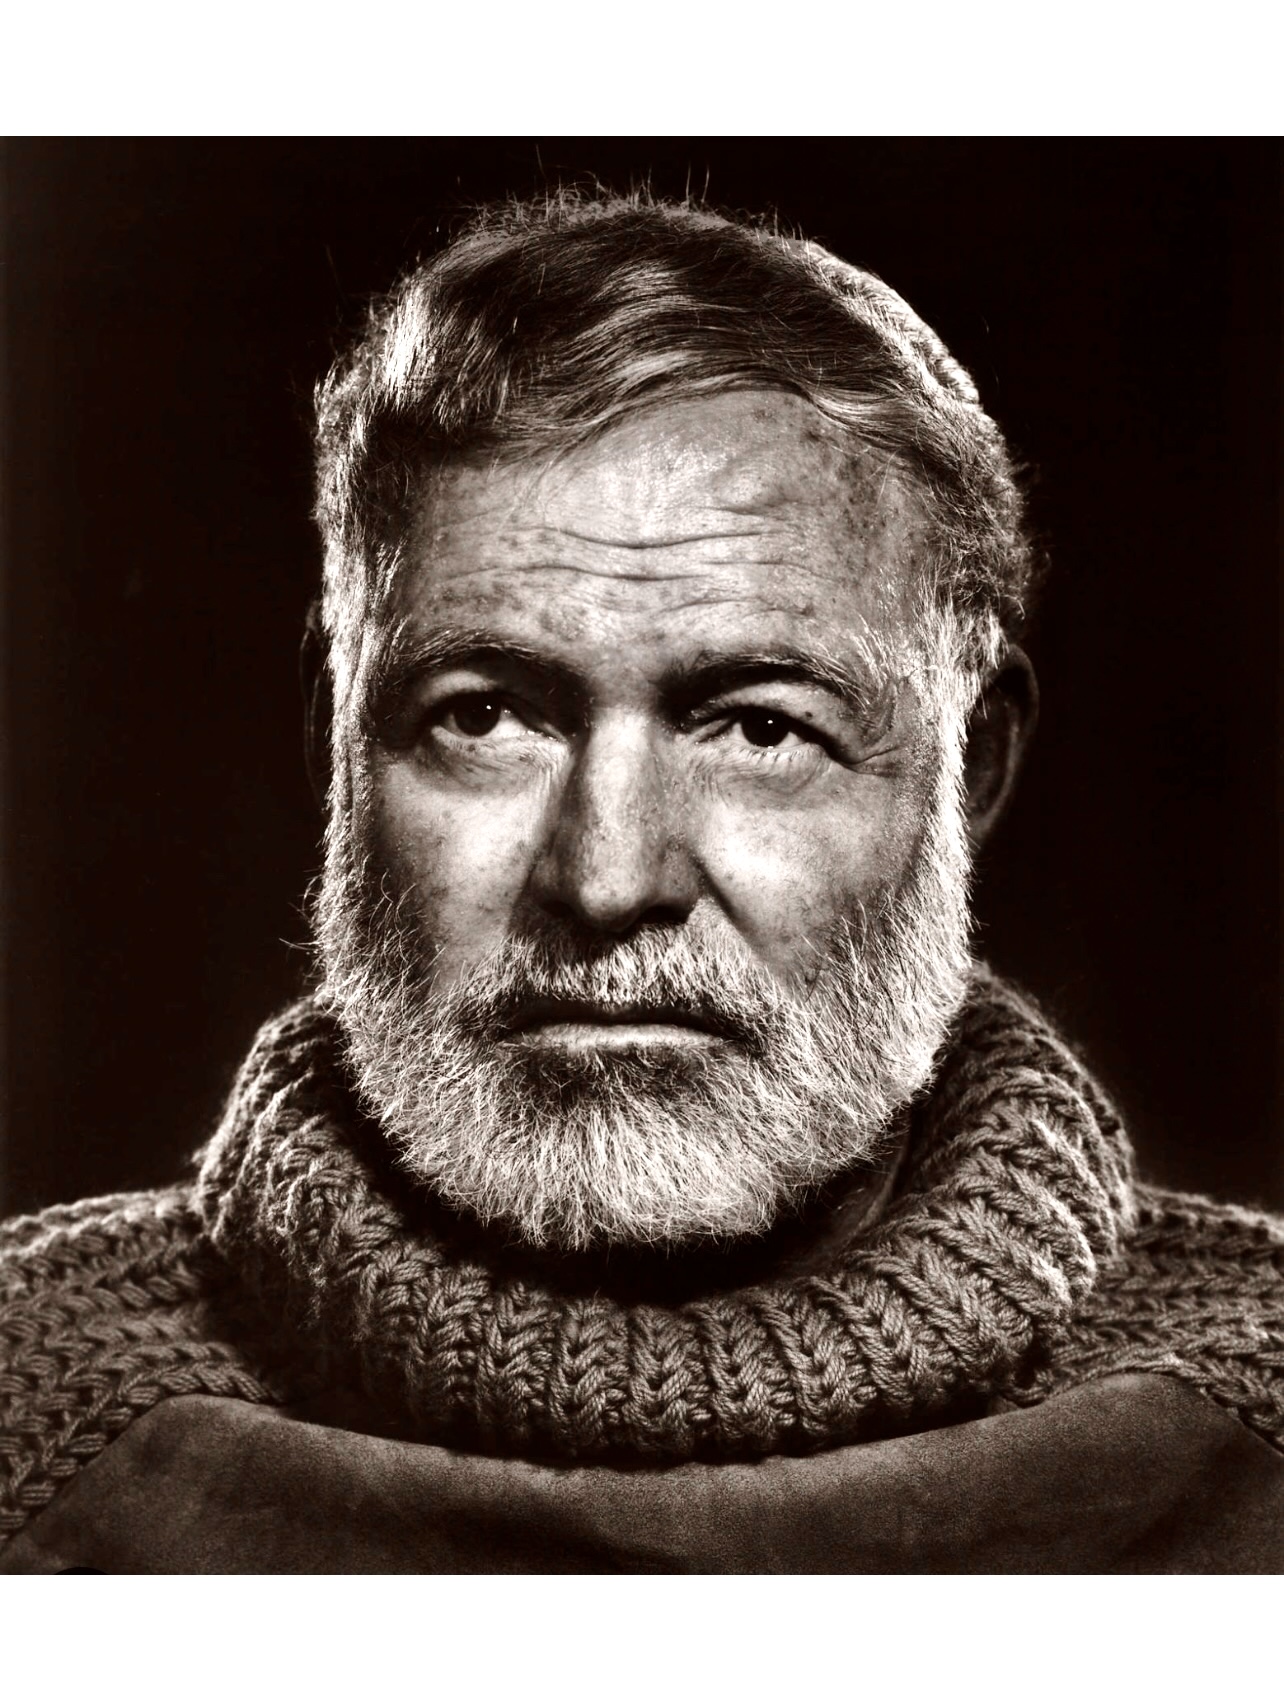 Une photo en noir et blanc d’un homme avec une barbe.